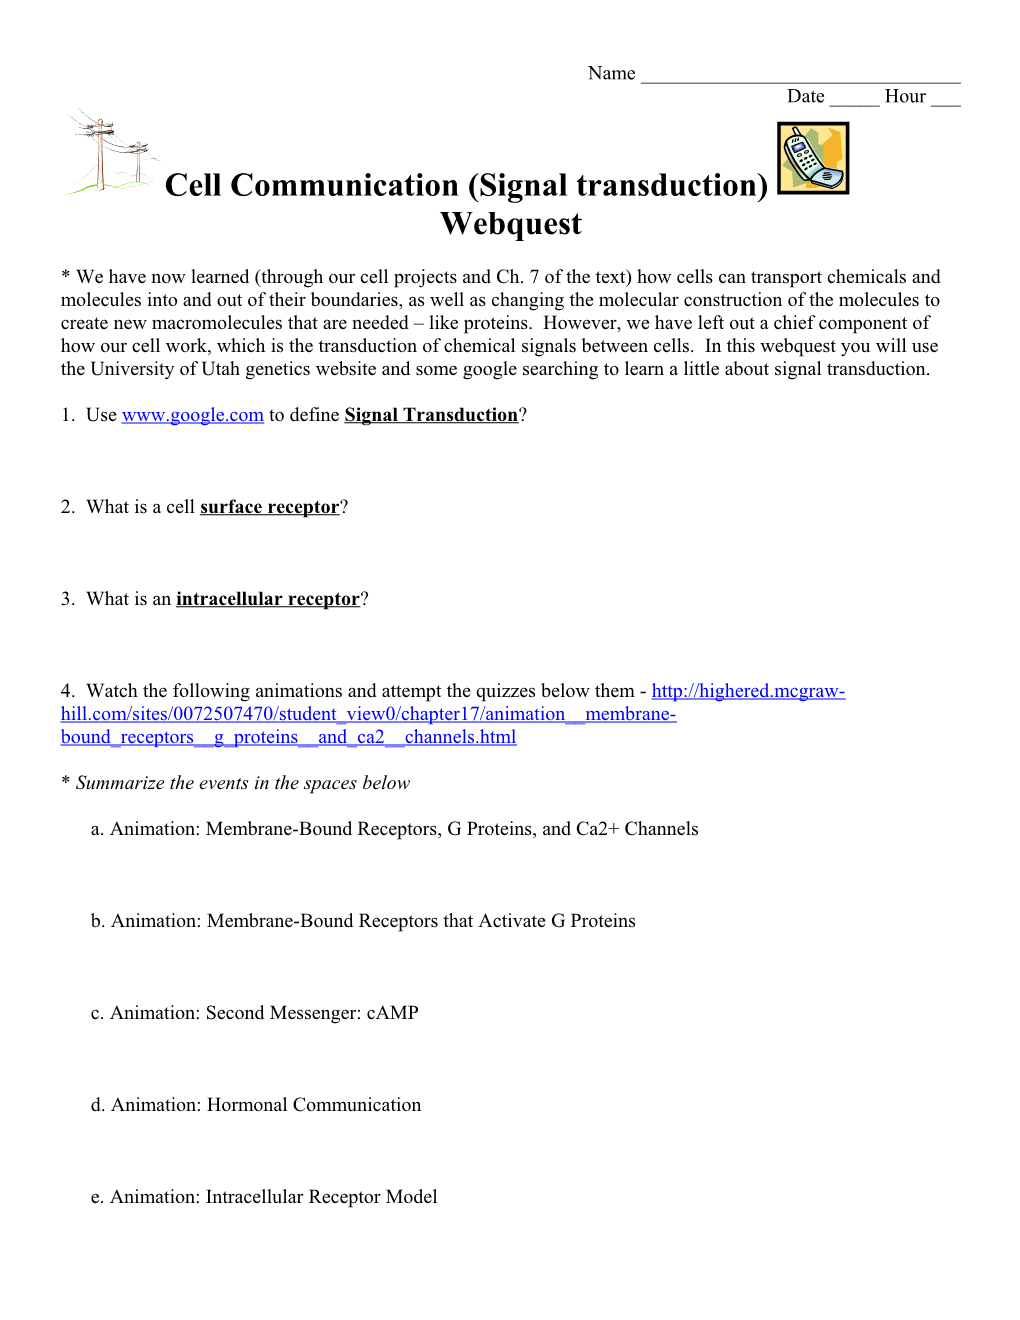 Cell Communication Webquest s2